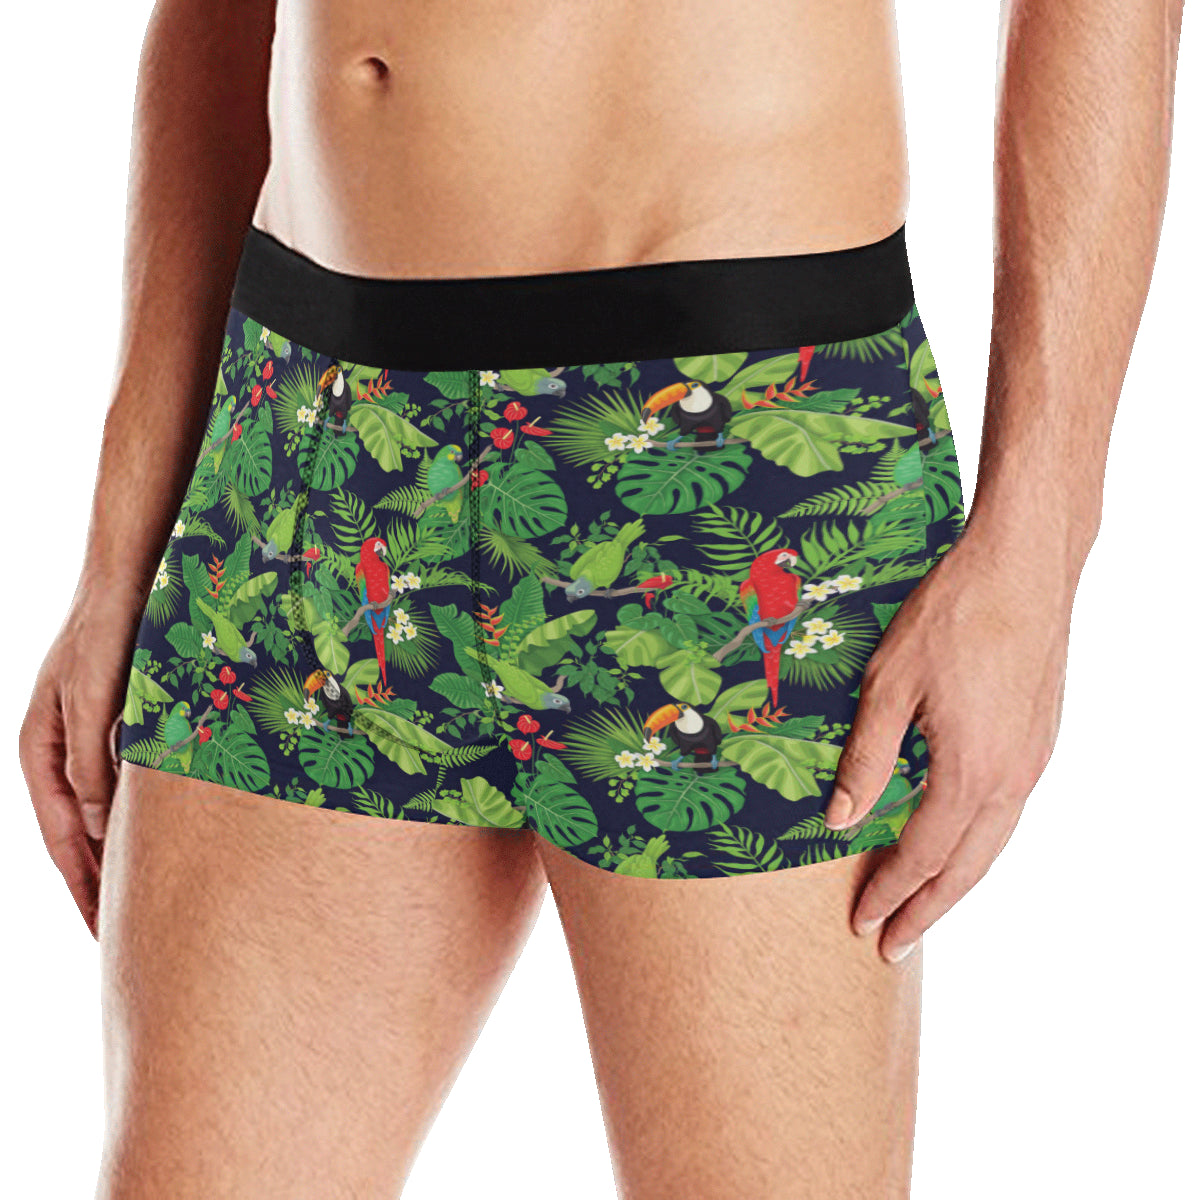 Rainforest Parrot Pattern Print Design A03 Men's Boxer Briefs